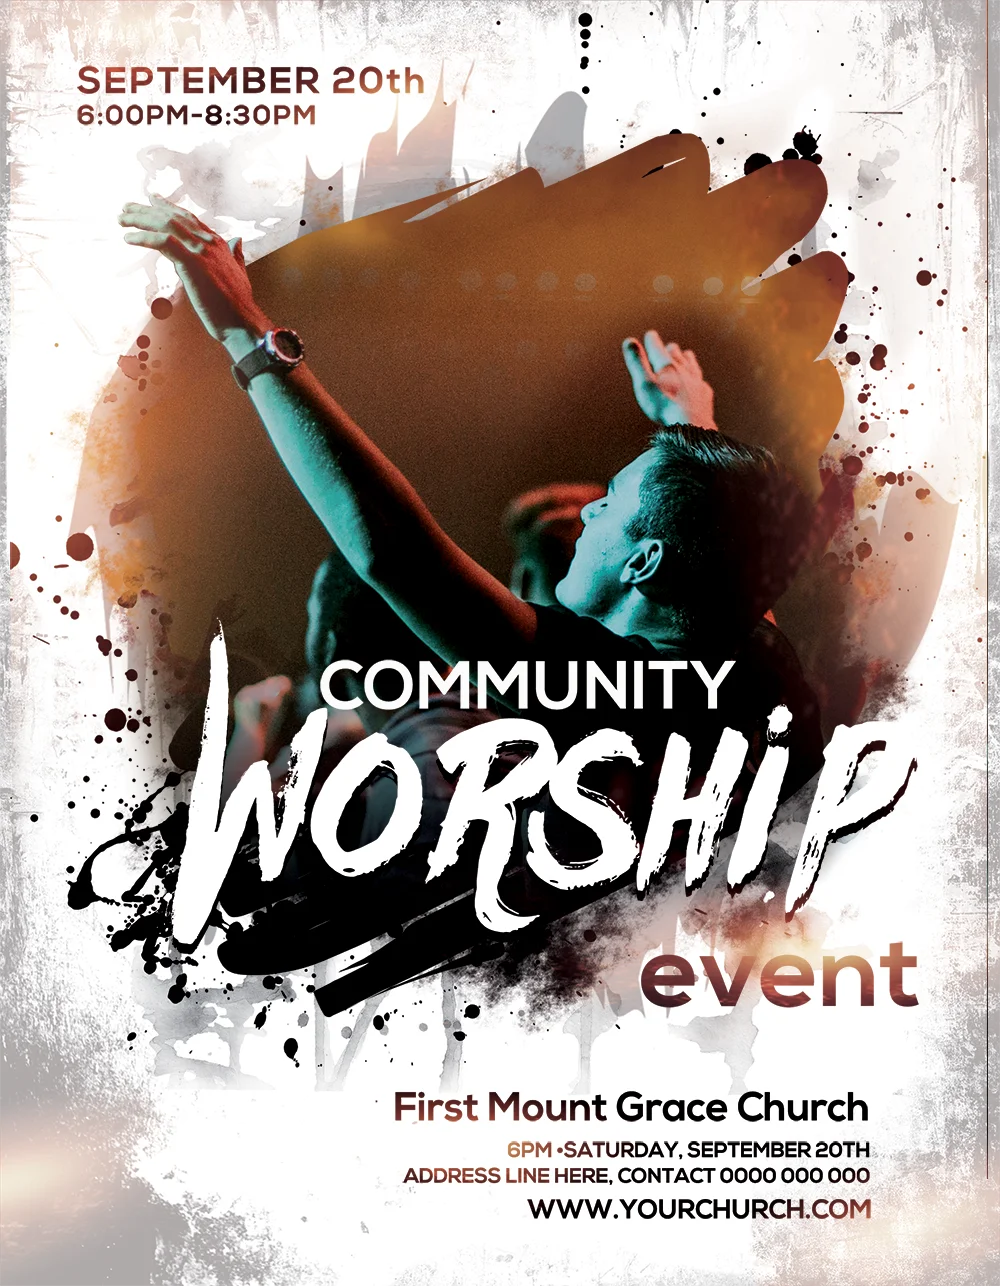 نشرة الكنيسة المجانية – حدث العبادة المجتمعية بواسطة صوت الوزارة